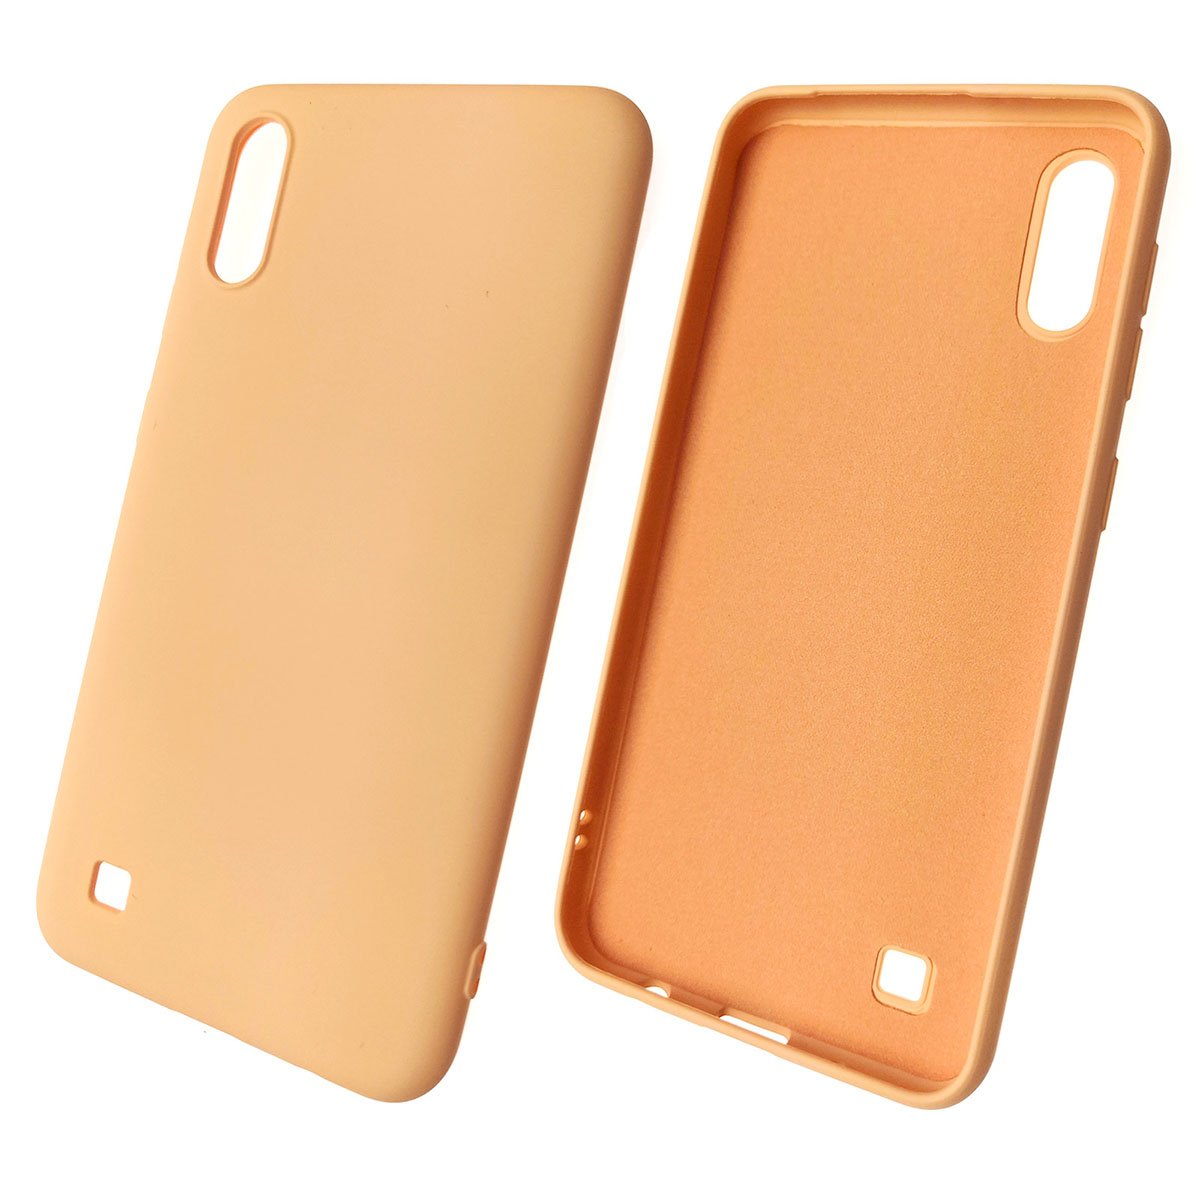 Чехол накладка Soft Touch для SAMSUNG Galaxy A10 (SM-A105), силикон, цвет персиковый.